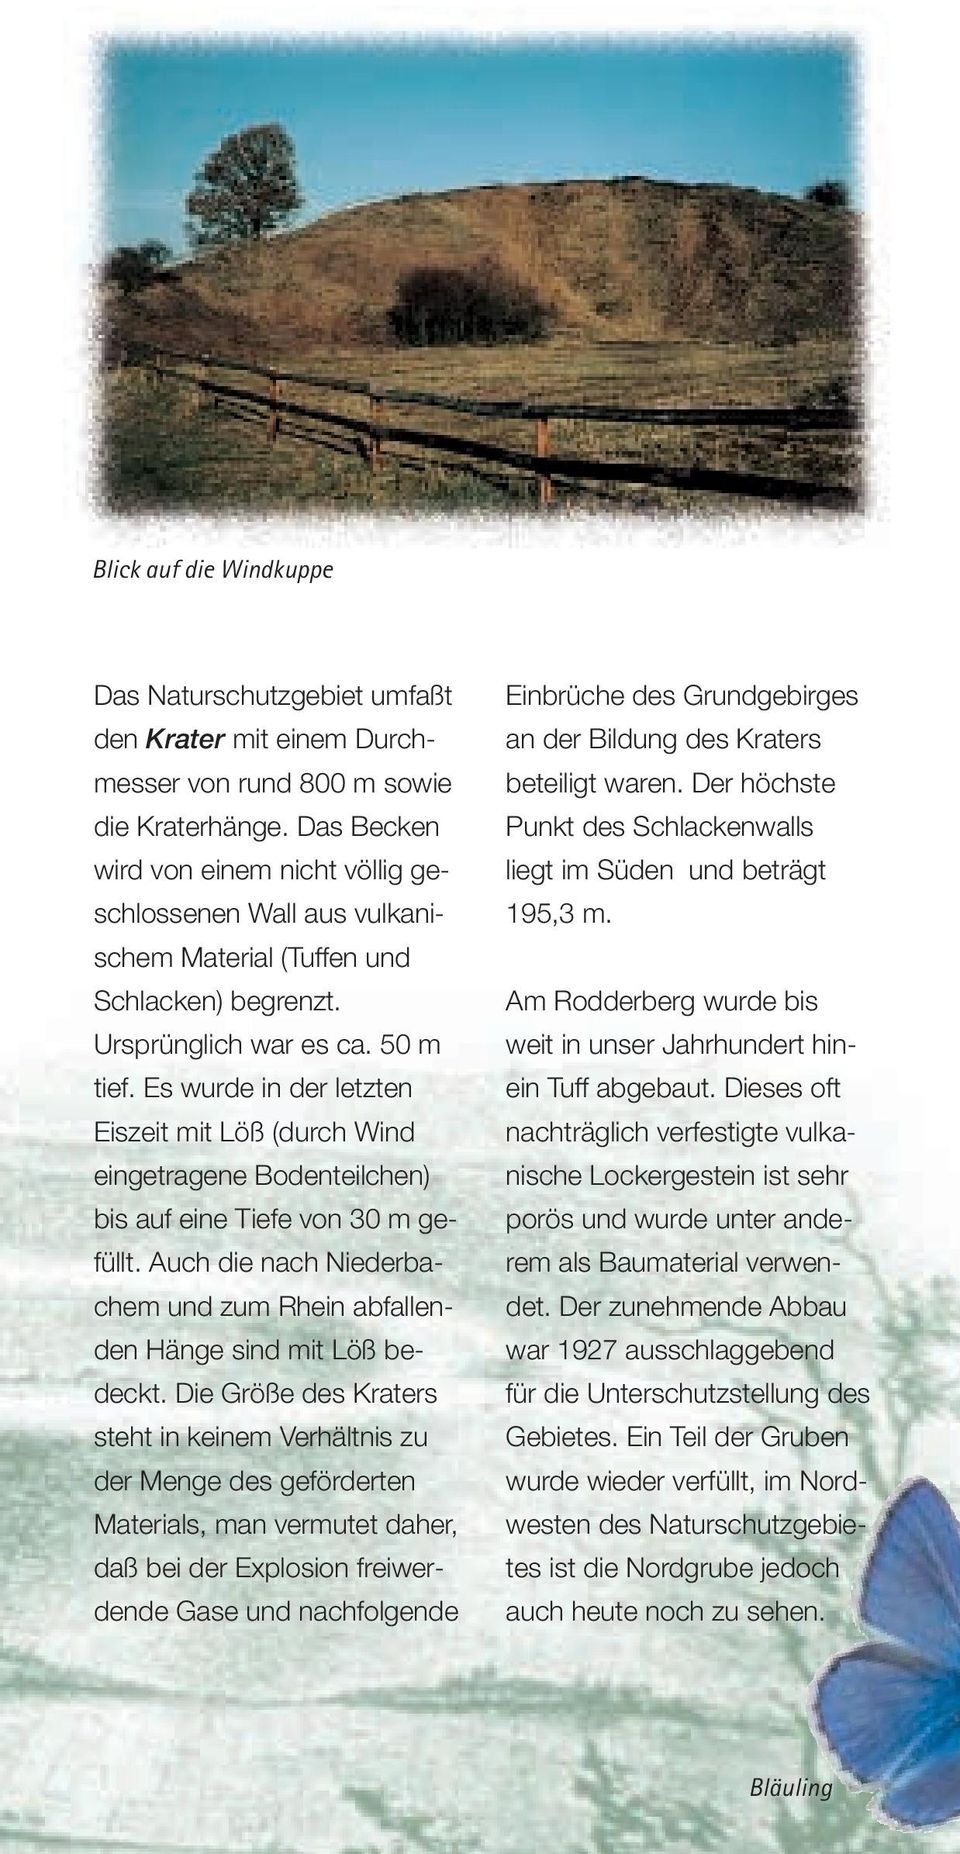 Es wurde in der letzten Eiszeit mit Löß (durch Wind eingetragene Bodenteilchen) bis auf eine Tiefe von 30 m gefüllt. Auch die nach Niederbachem und zum Rhein abfallenden Hänge sind mit Löß bedeckt.